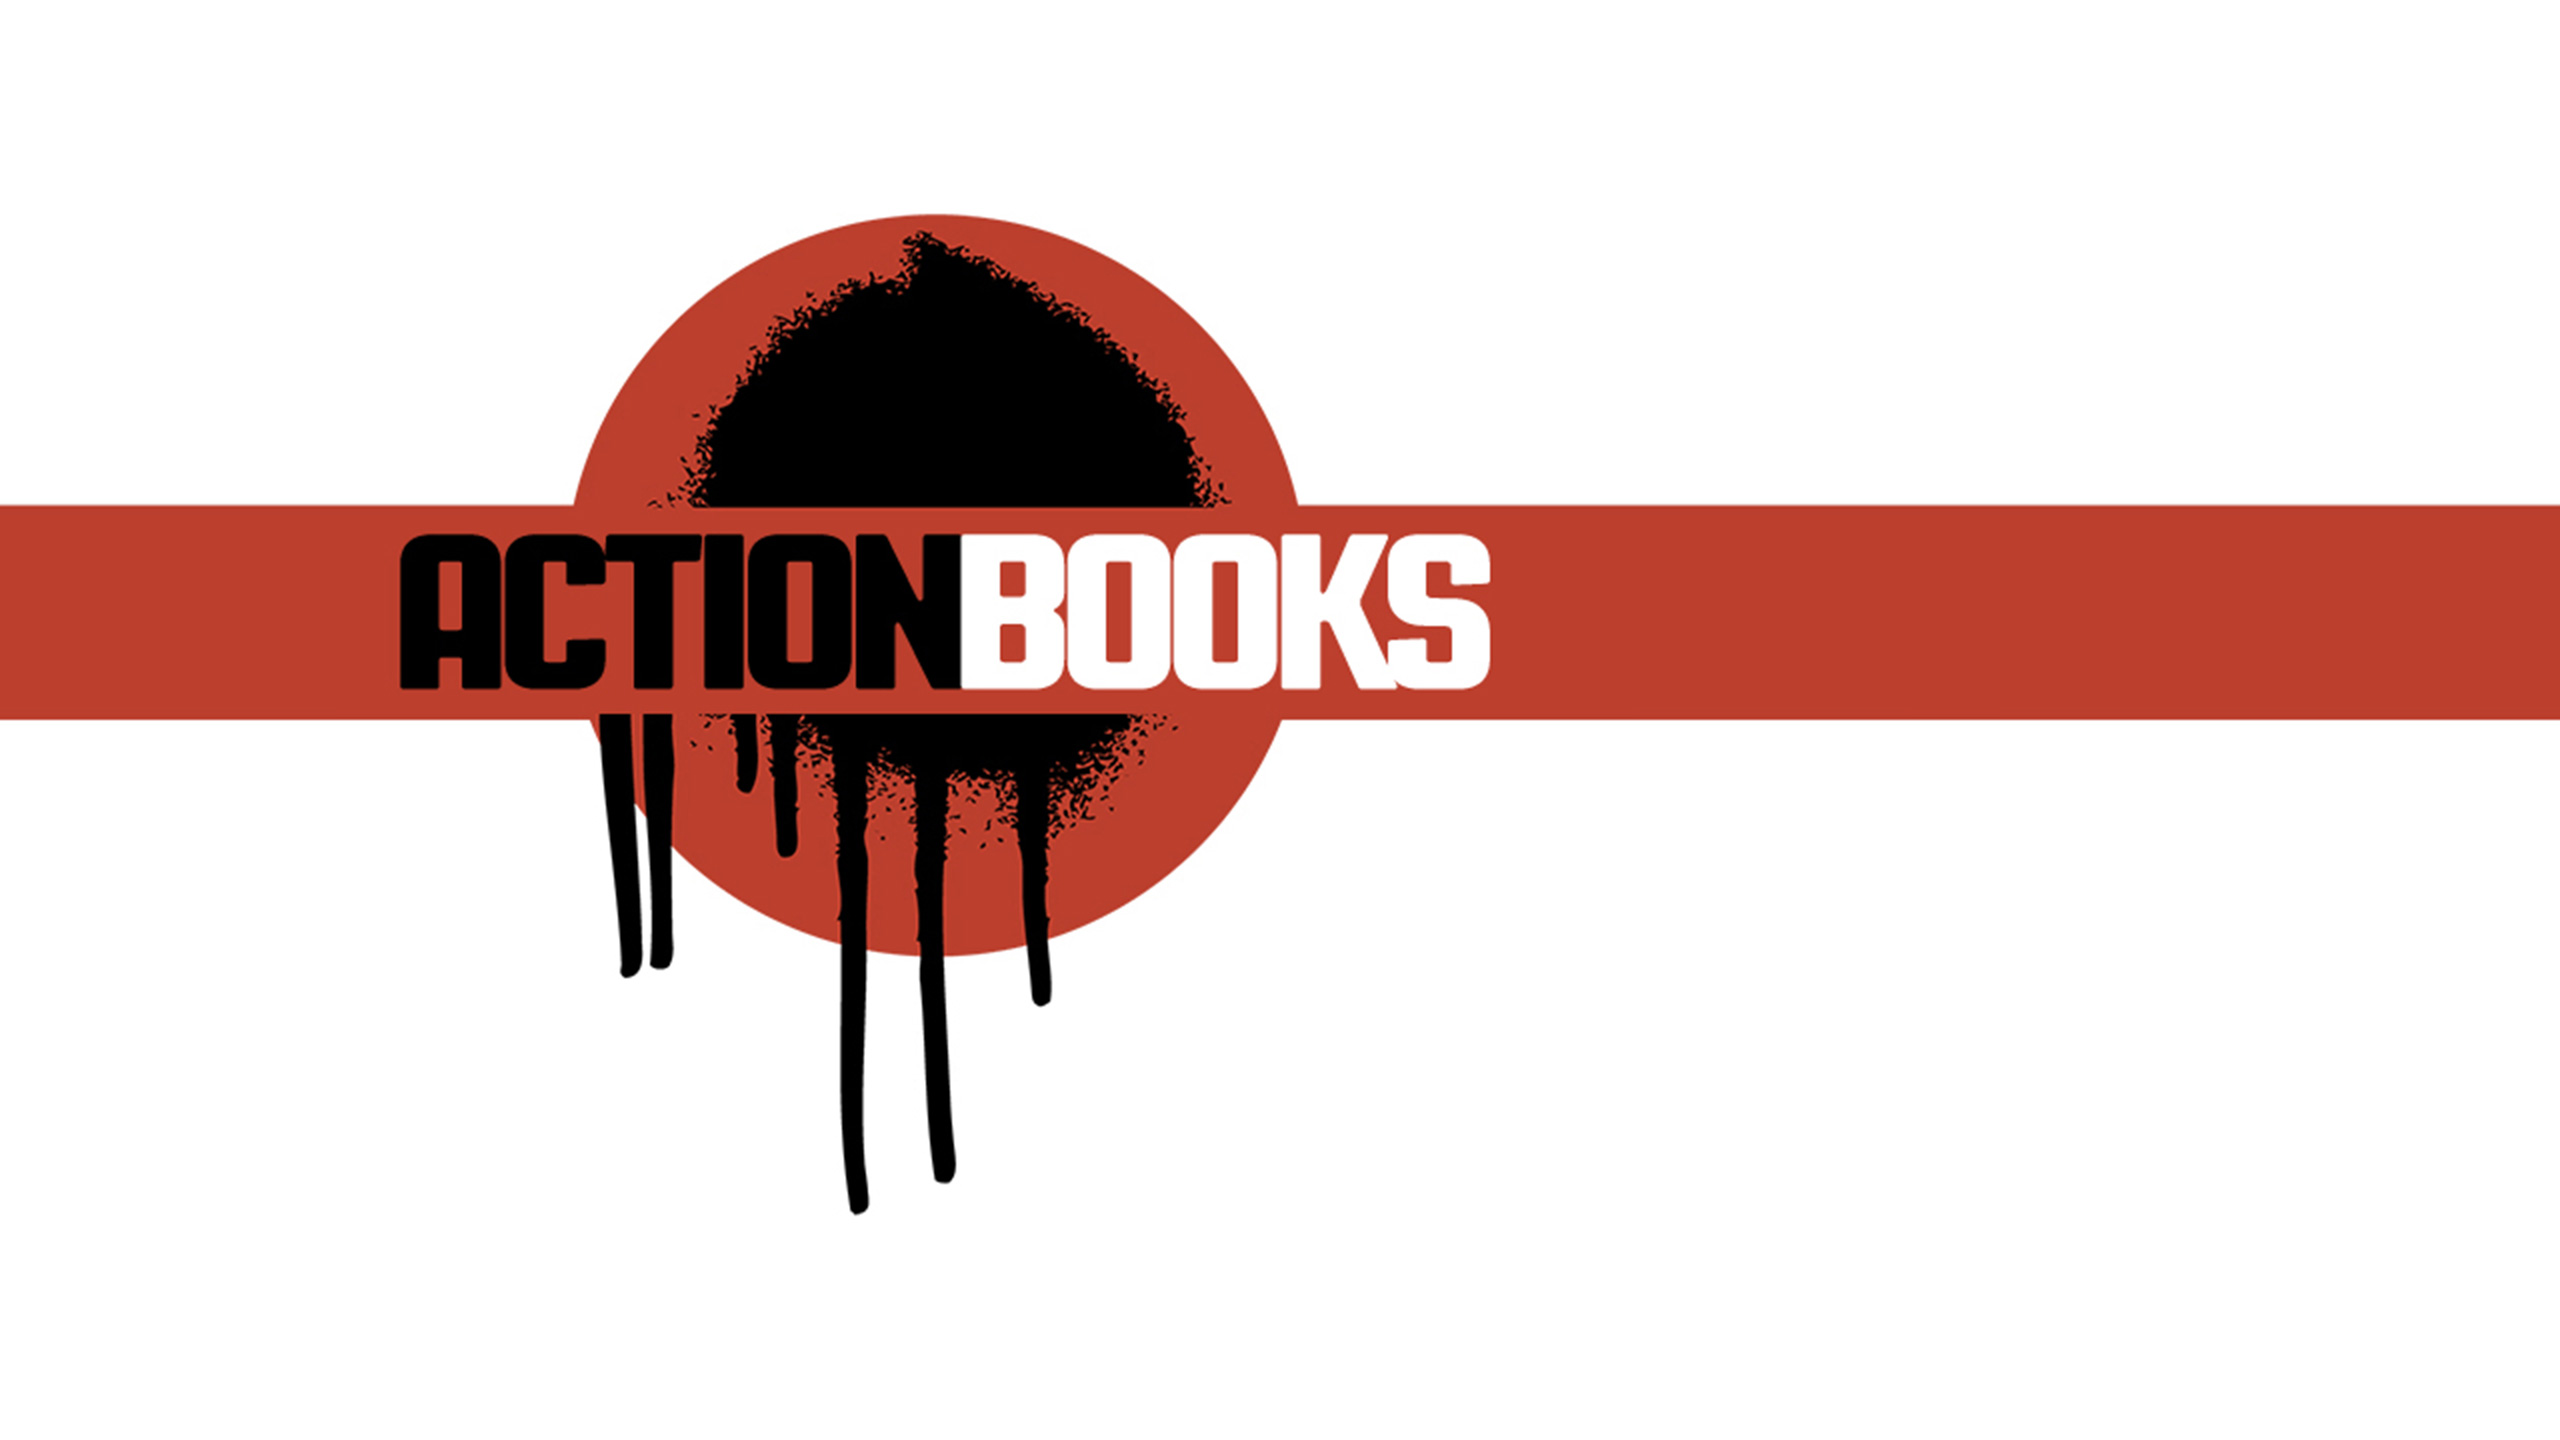 (c) Actionbooks.org